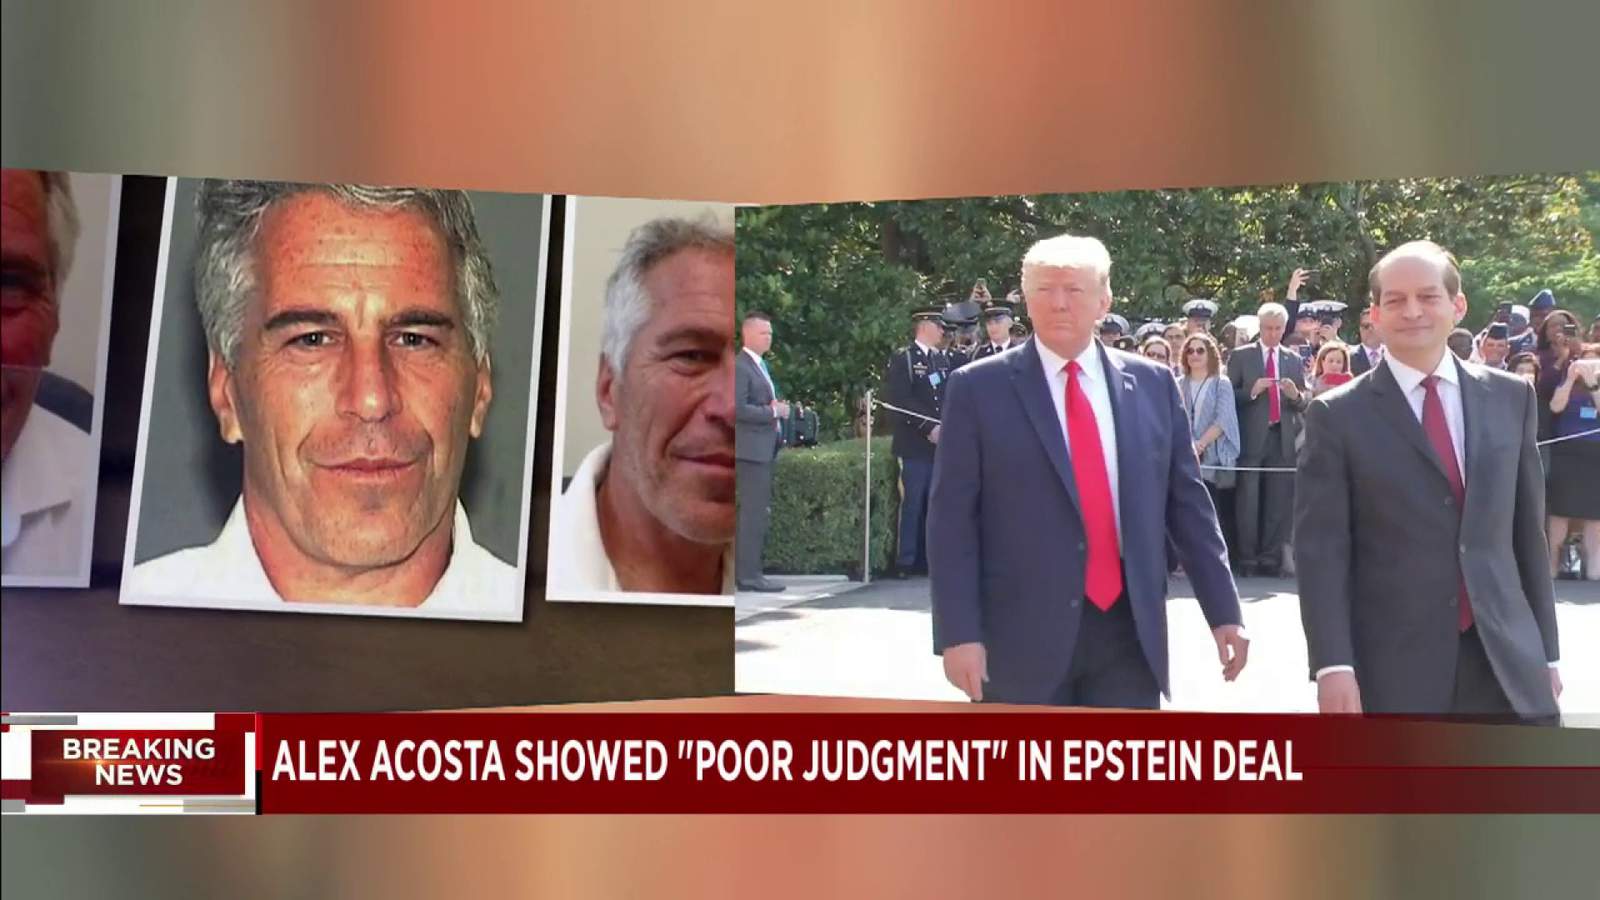 Justice Dept.: ‘Poor judgment’ used in Epstein plea deal